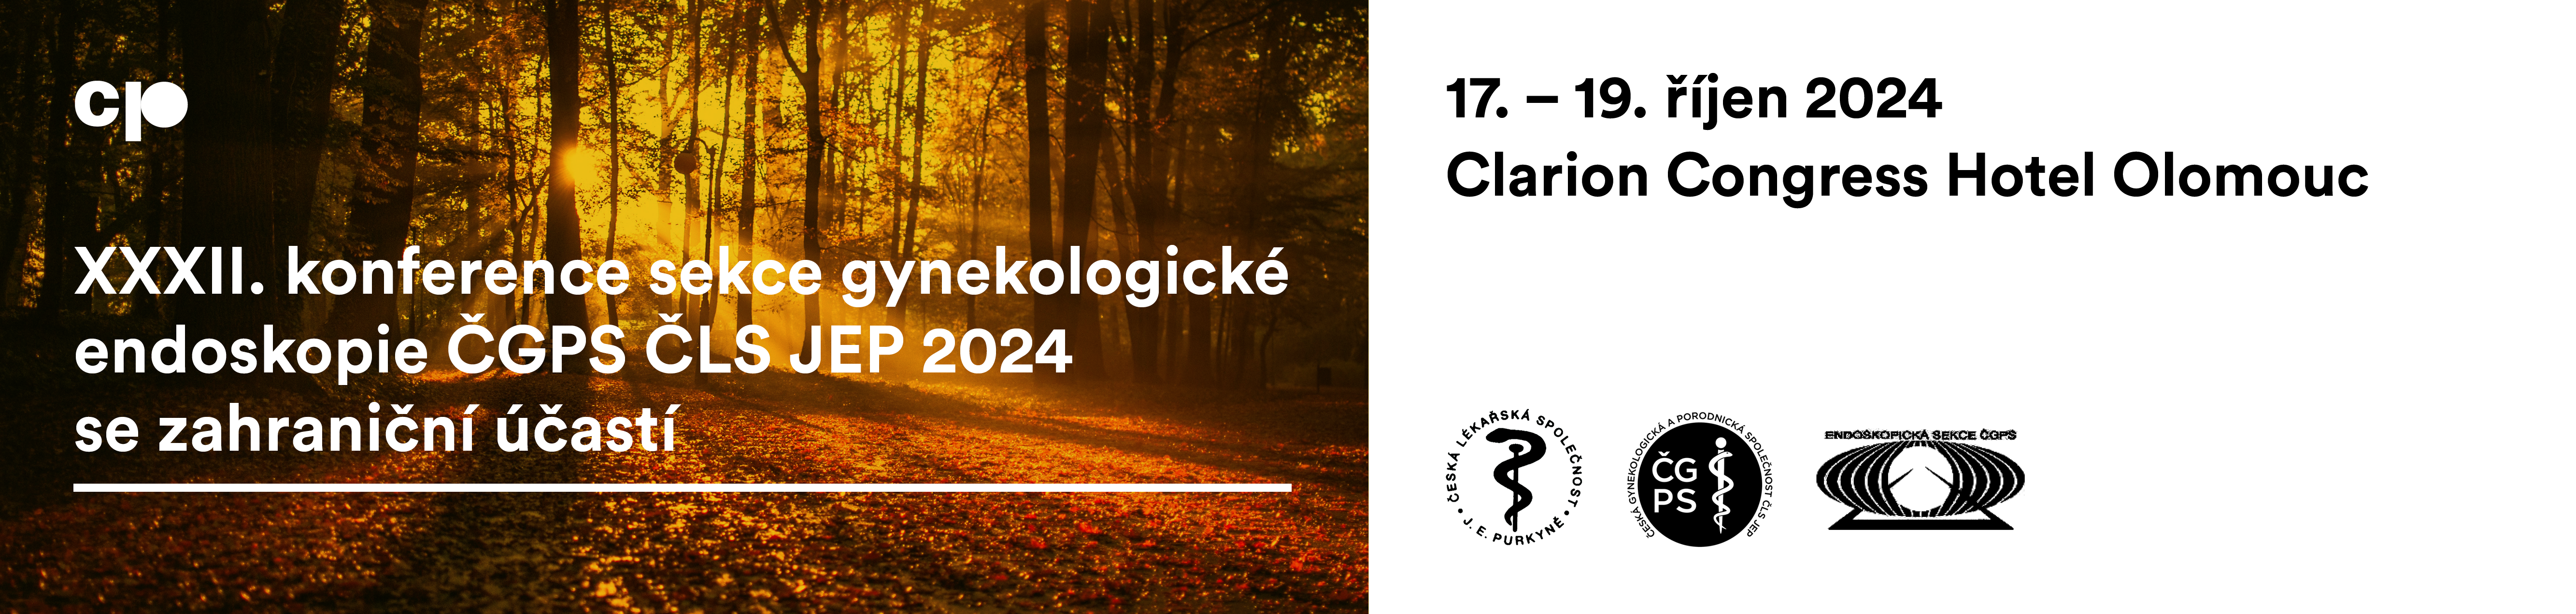 XXXII. konference sekce gynekologické endoskopie ČGPS ČLS JEP 2024 se zahraniční účastí